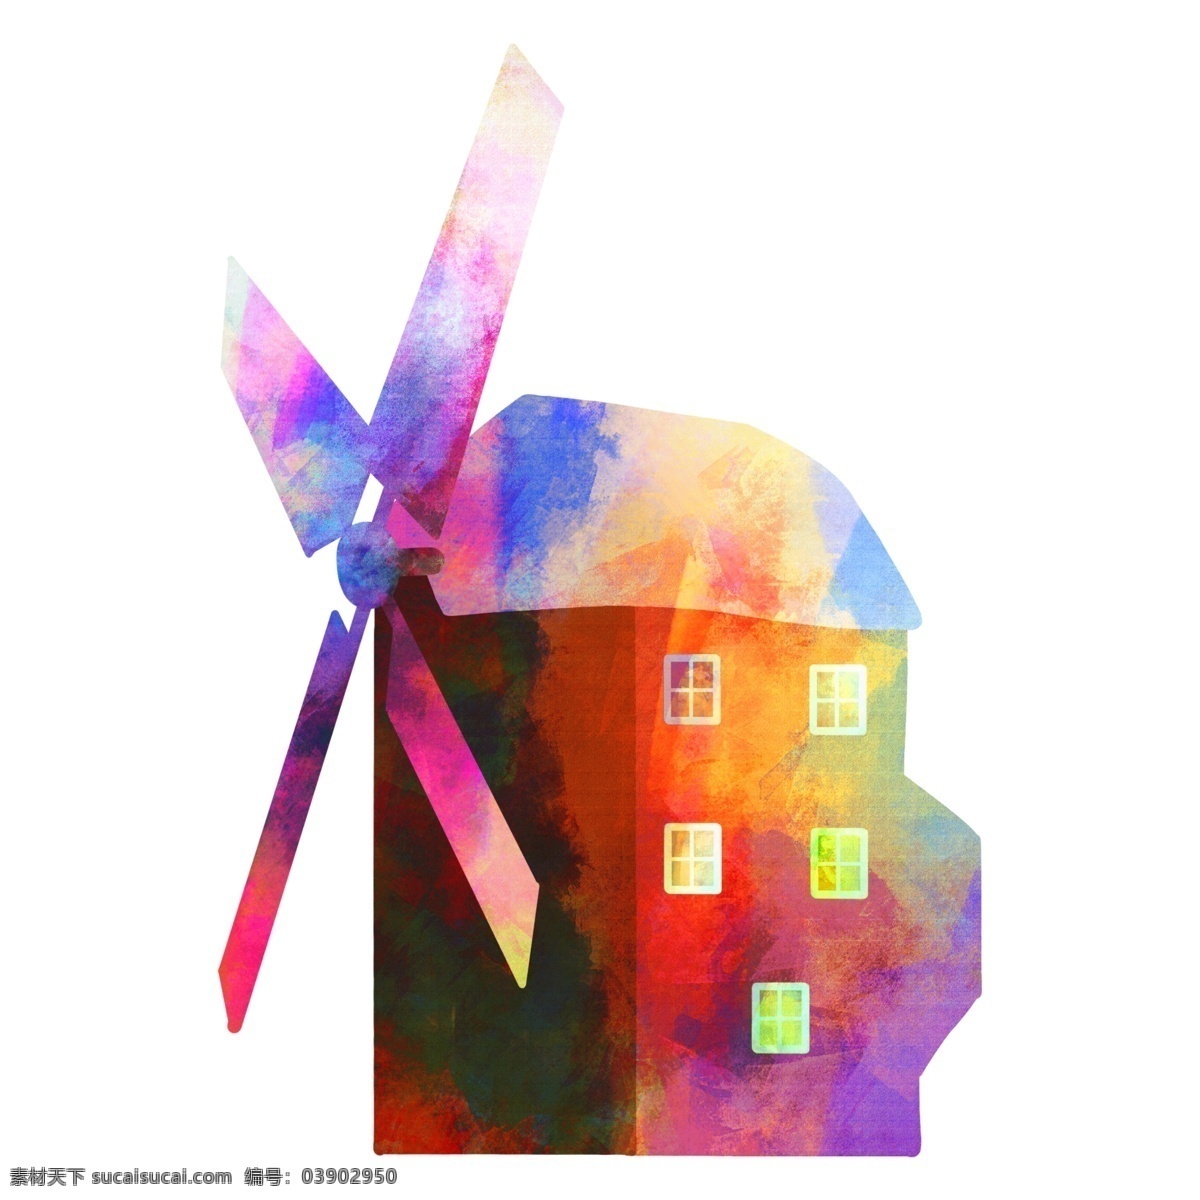 风车 节约能源 插画 节能减排插画 卡通插画 风车玩具 风车建筑 风力发电 节能减排 美丽的风车